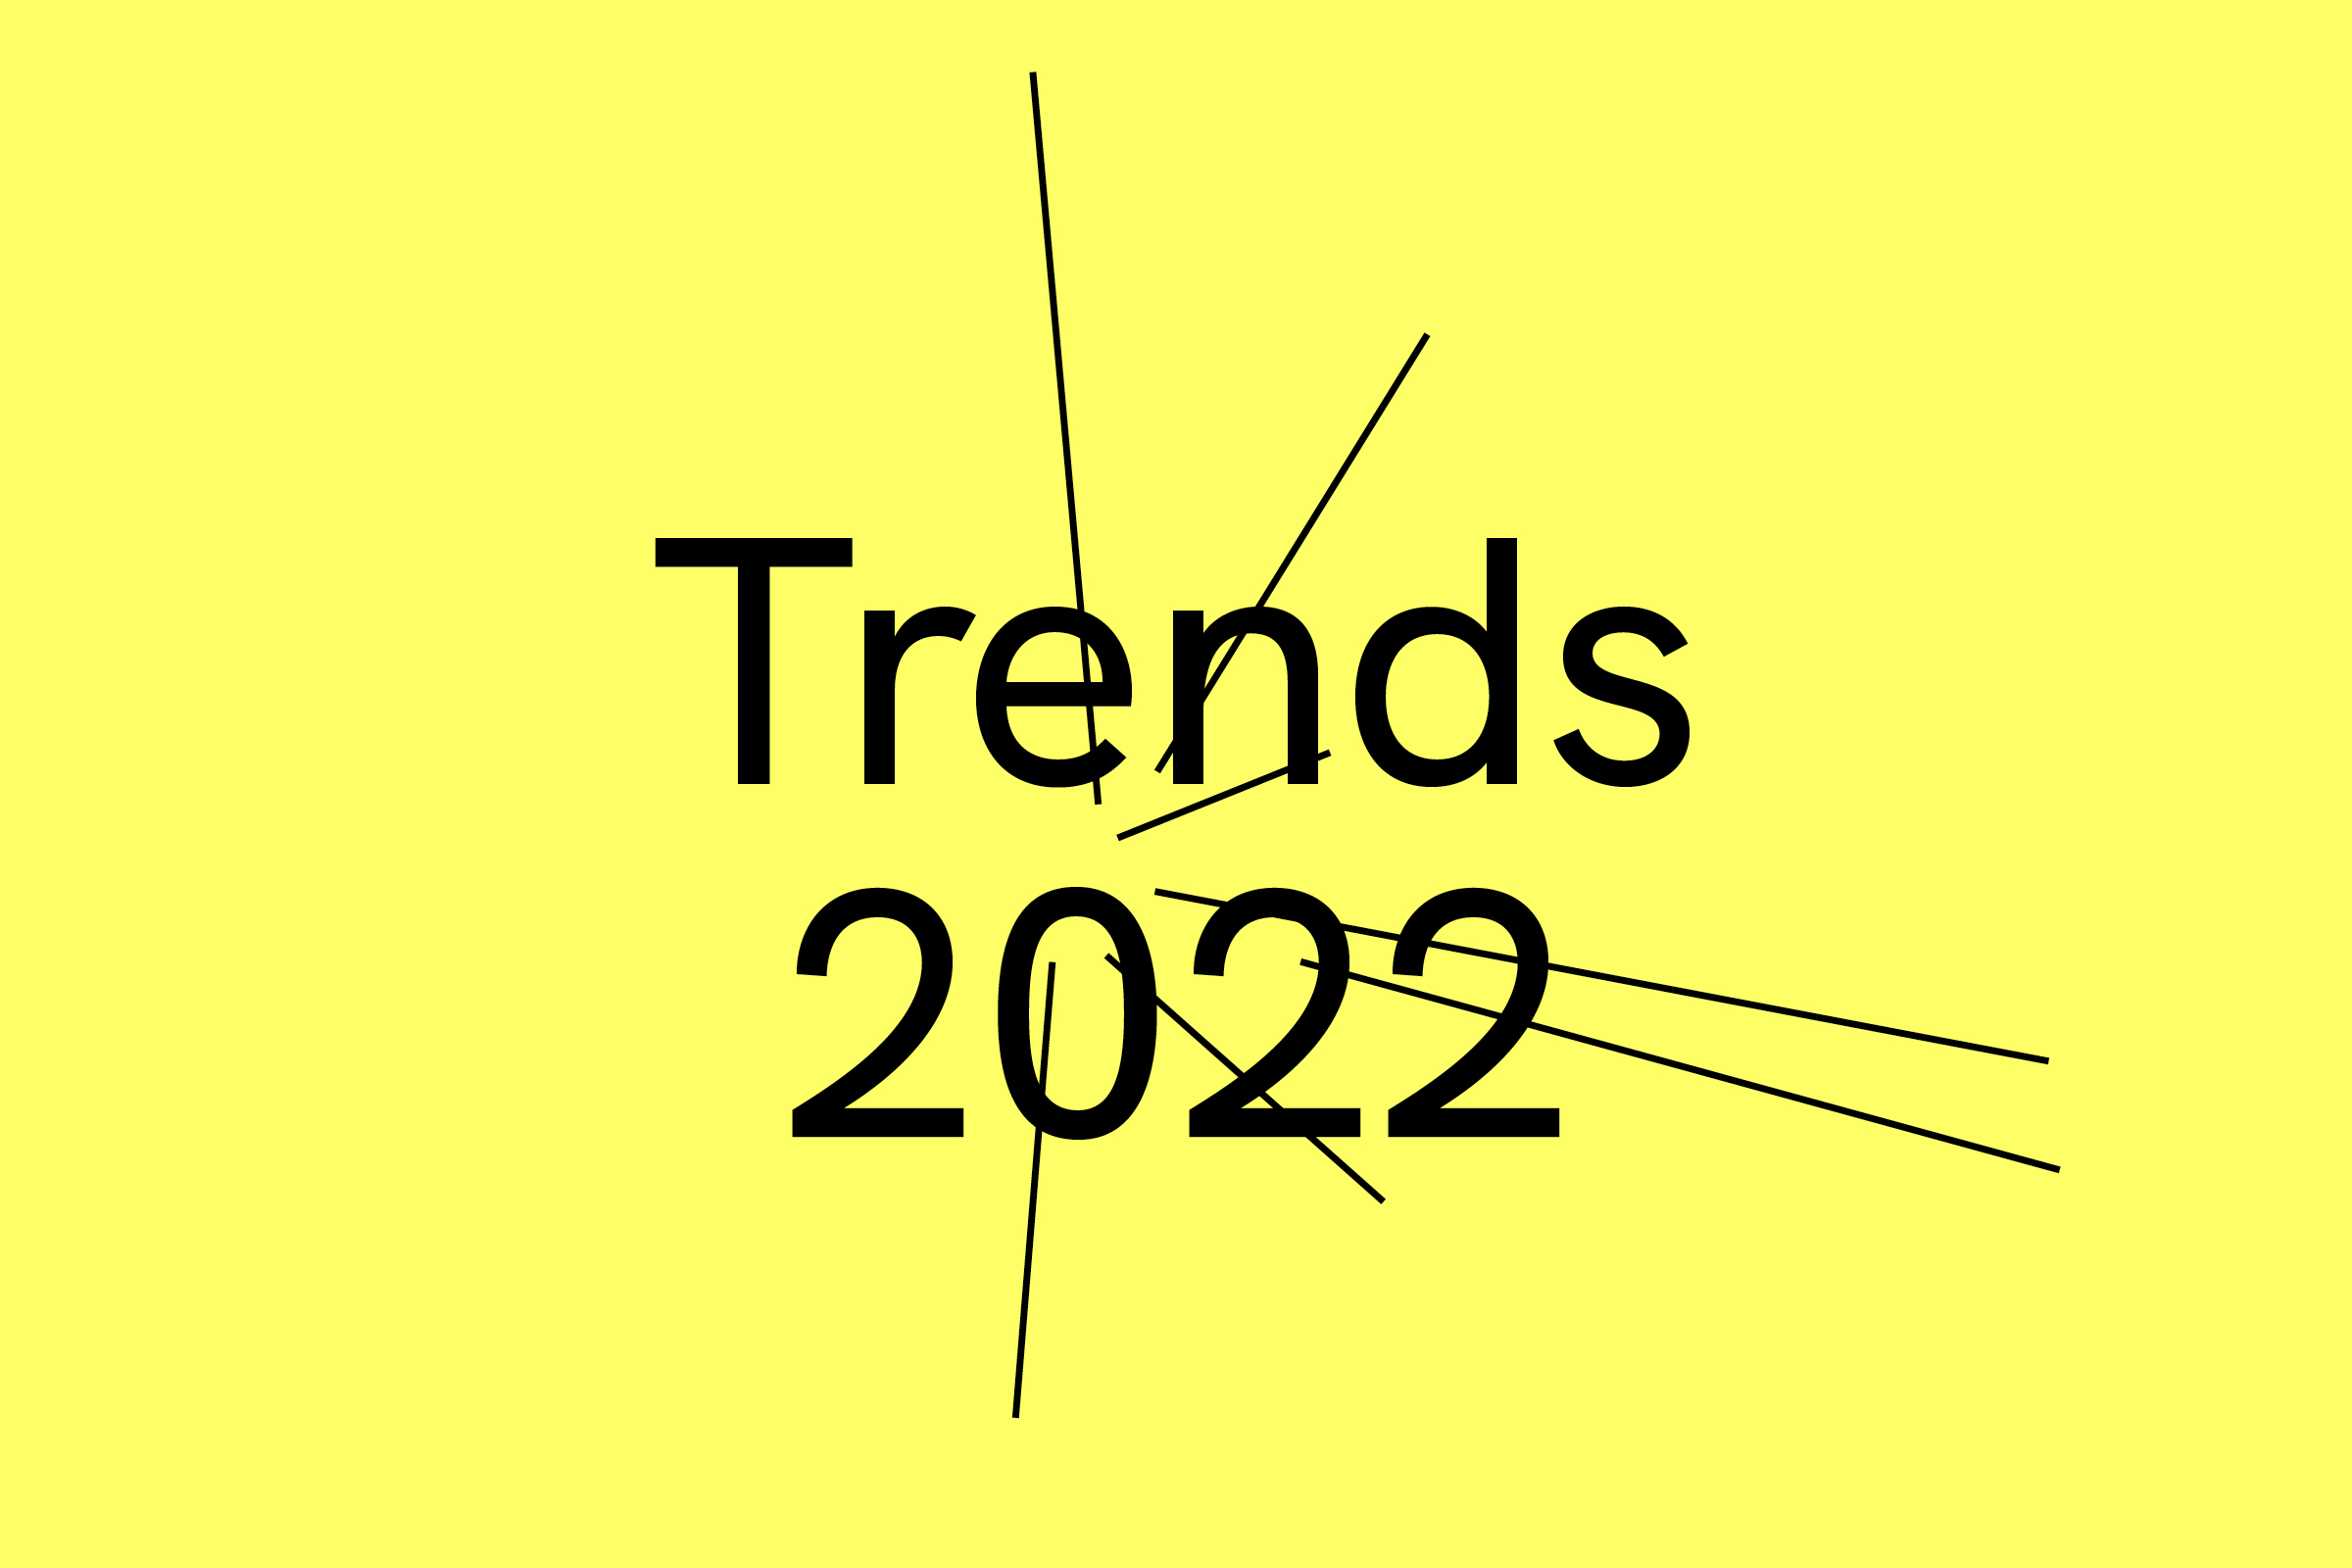 We @ Trends 2022